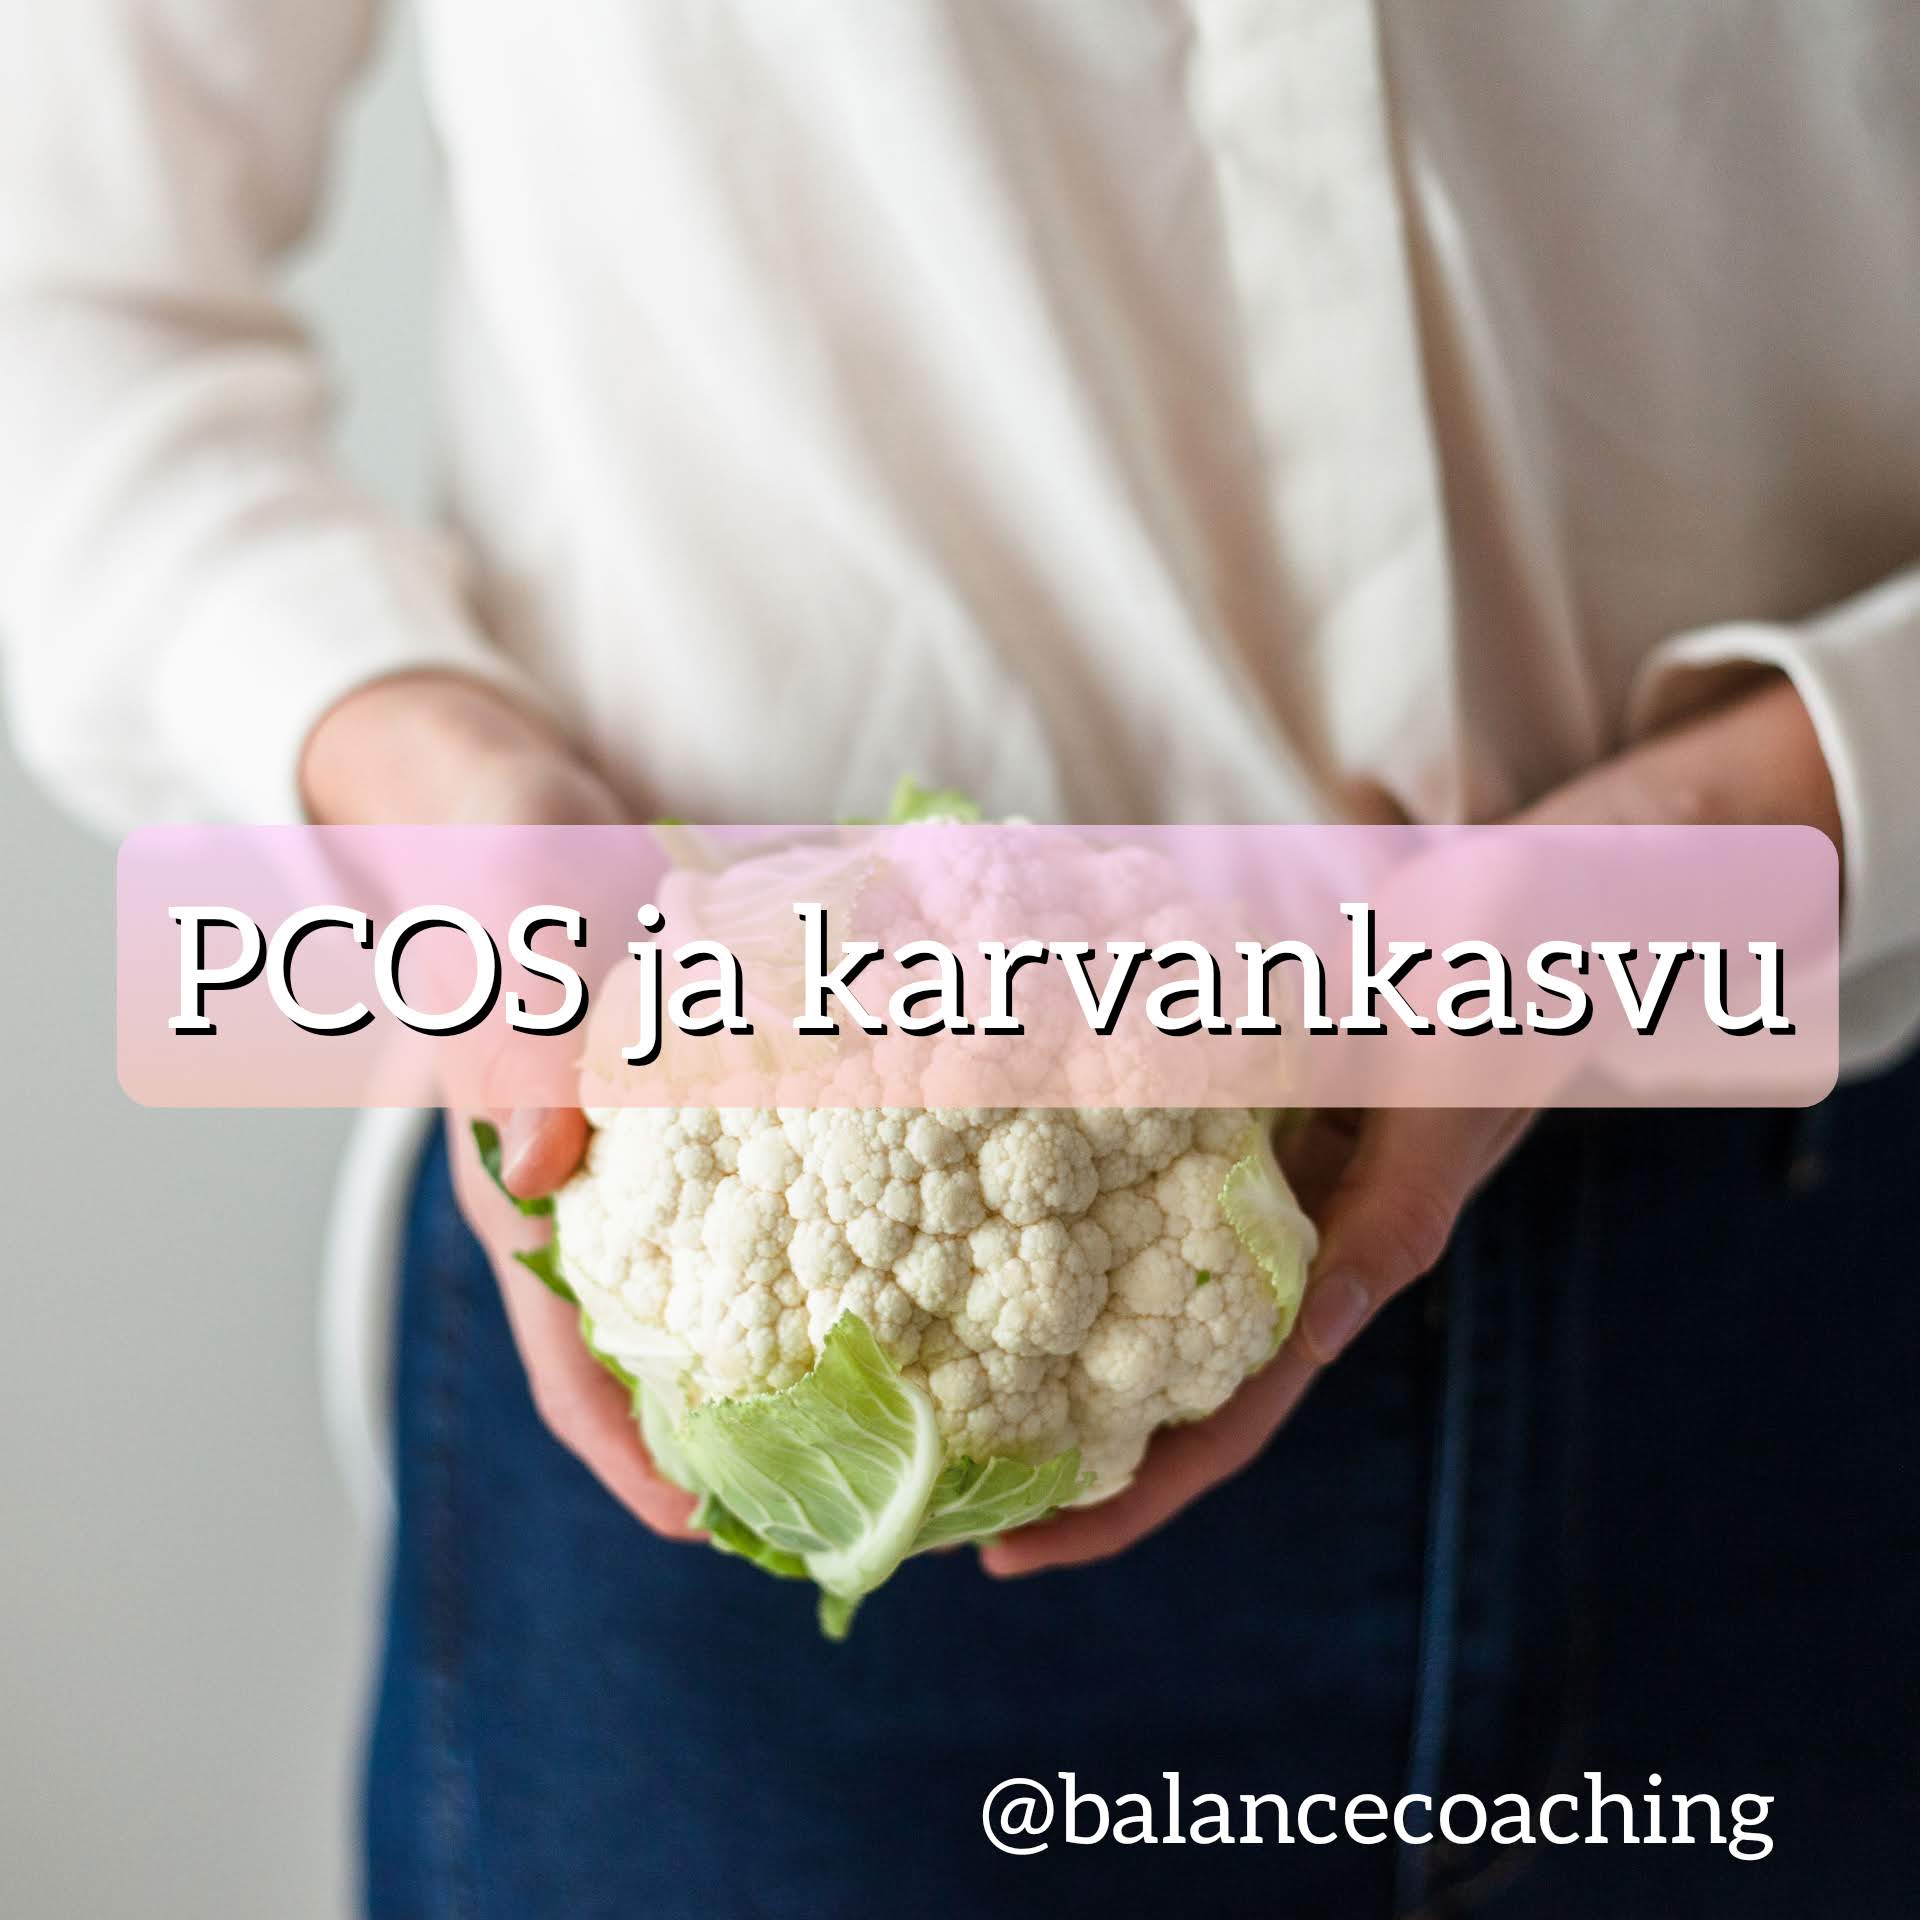 PCOS ja karvan kasvu - Balance Coaching